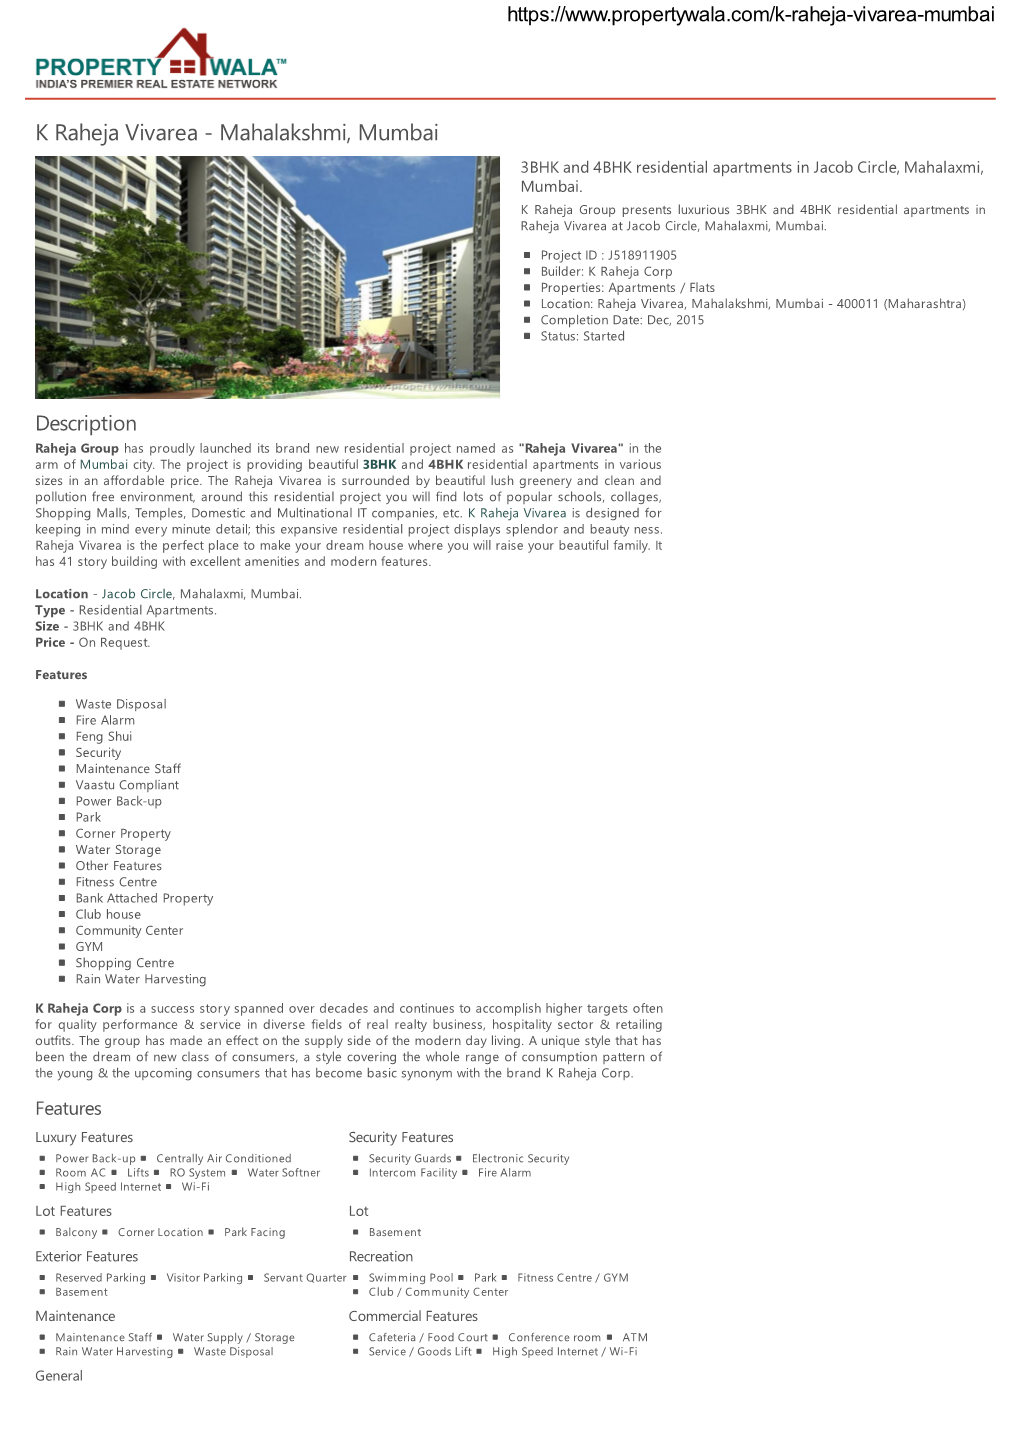 K Raheja Vivarea - Mahalakshmi, Mumbai 3BHK and 4BHK Residential Apartments in Jacob Circle, Mahalaxmi, Mumbai